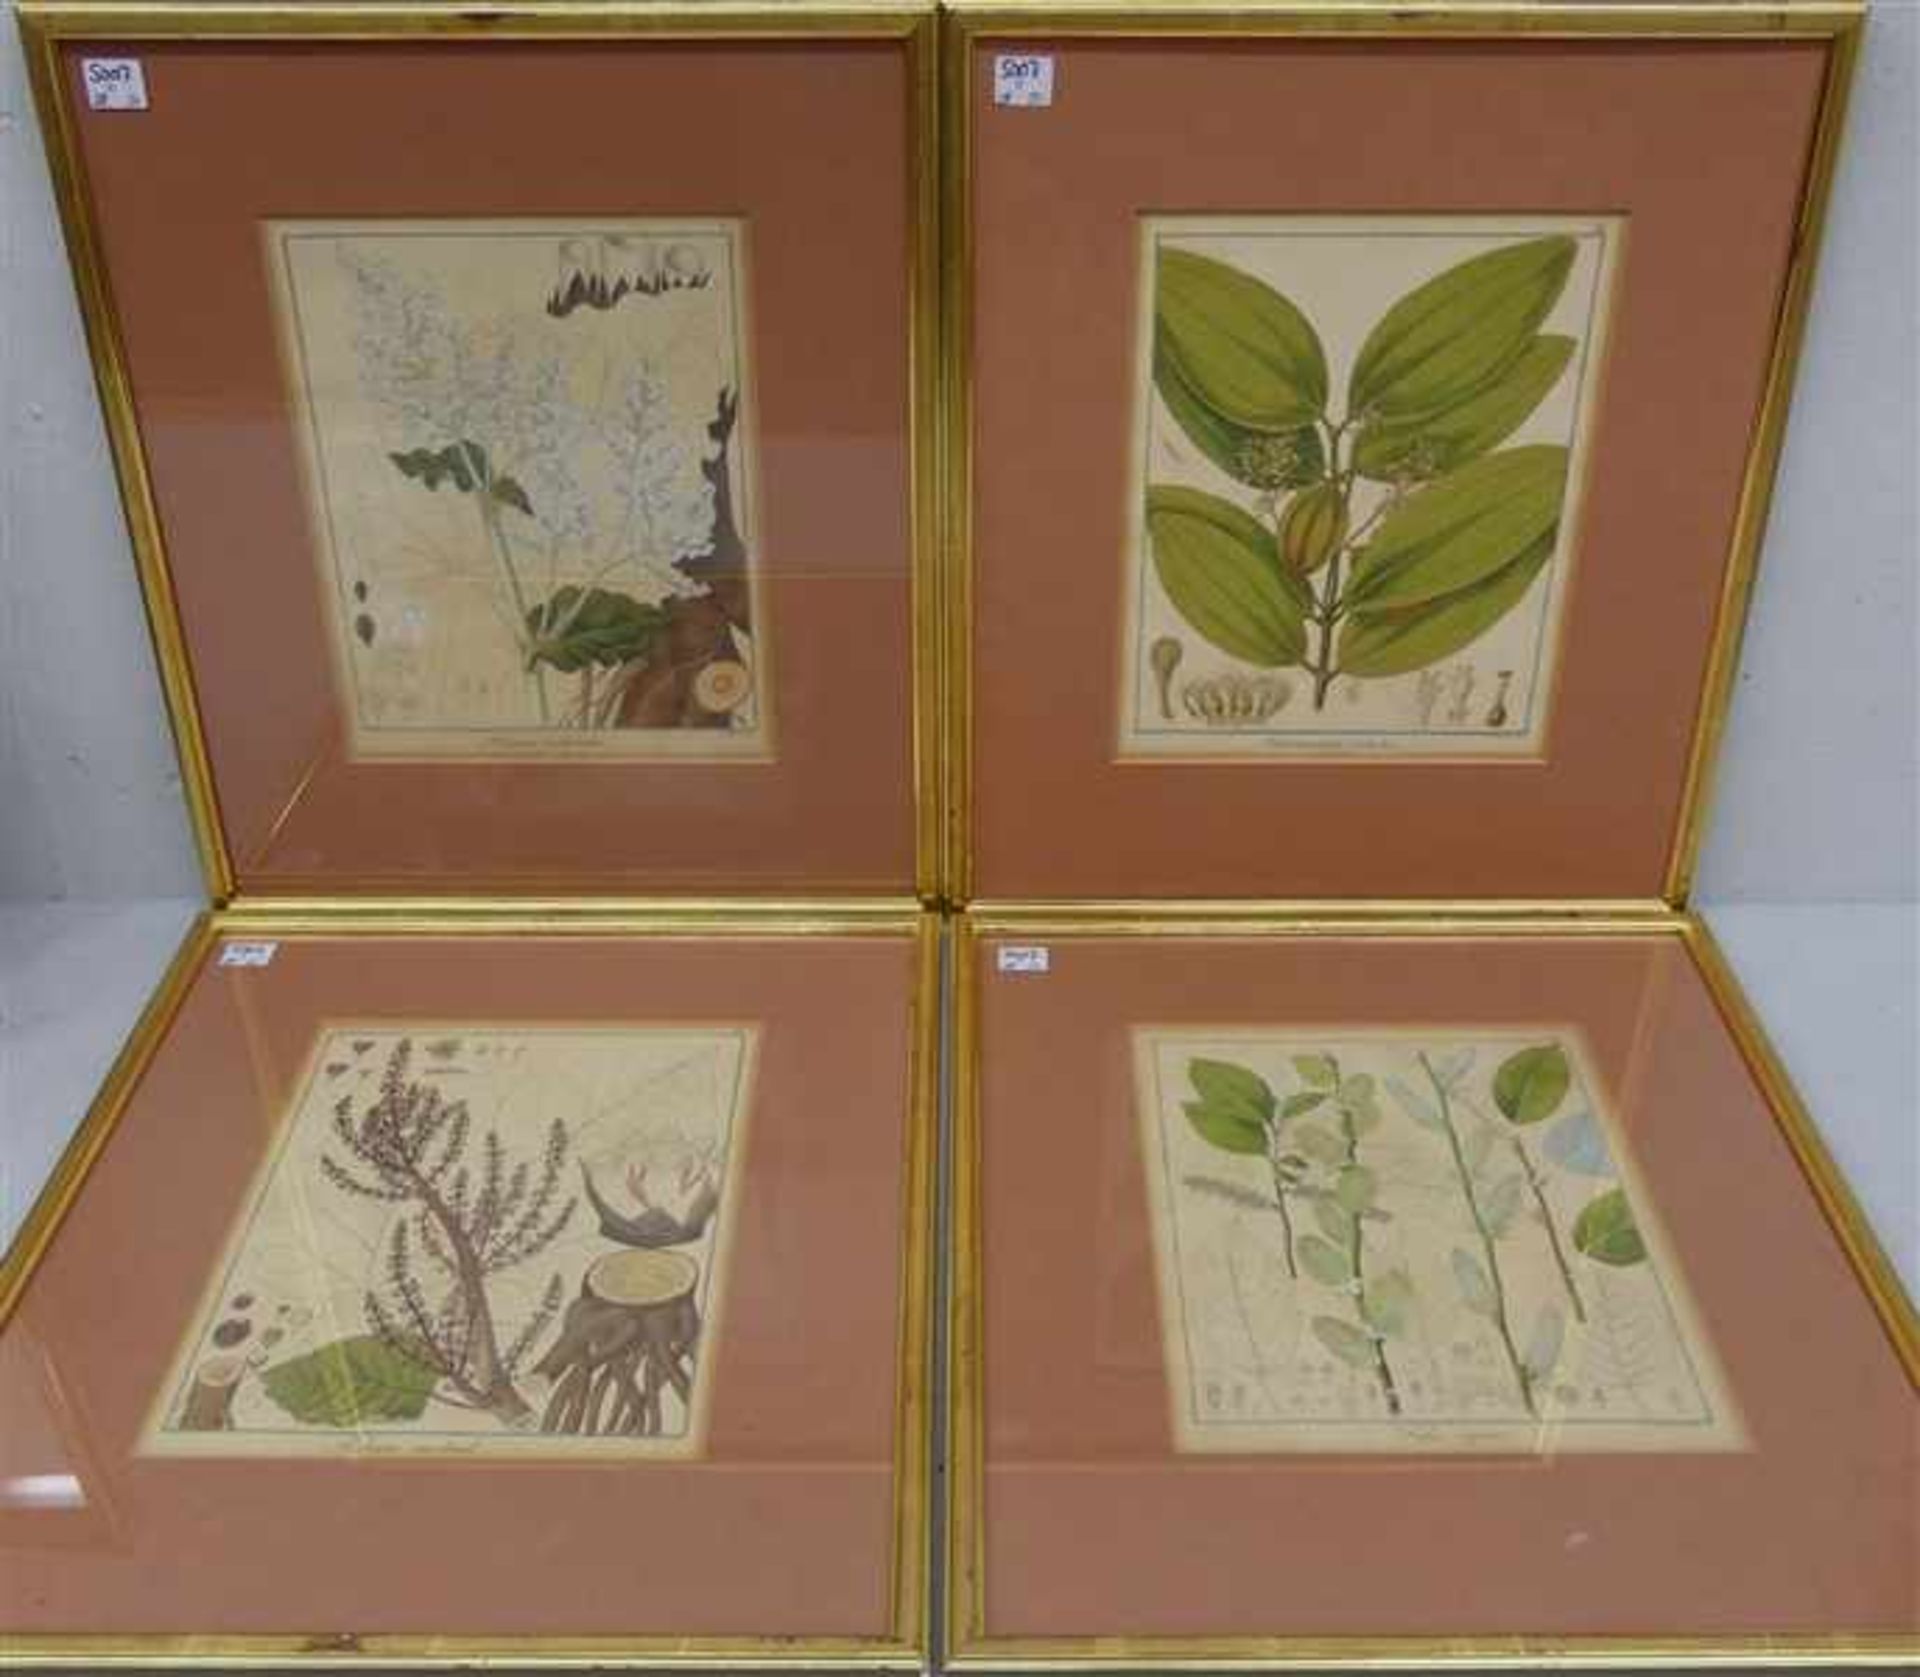 4 Pflanzenstiche, 19. Jh. coloriert, von F. Guimpel, verschieden, je 26x21 cm, im Rahmen,- - -20.